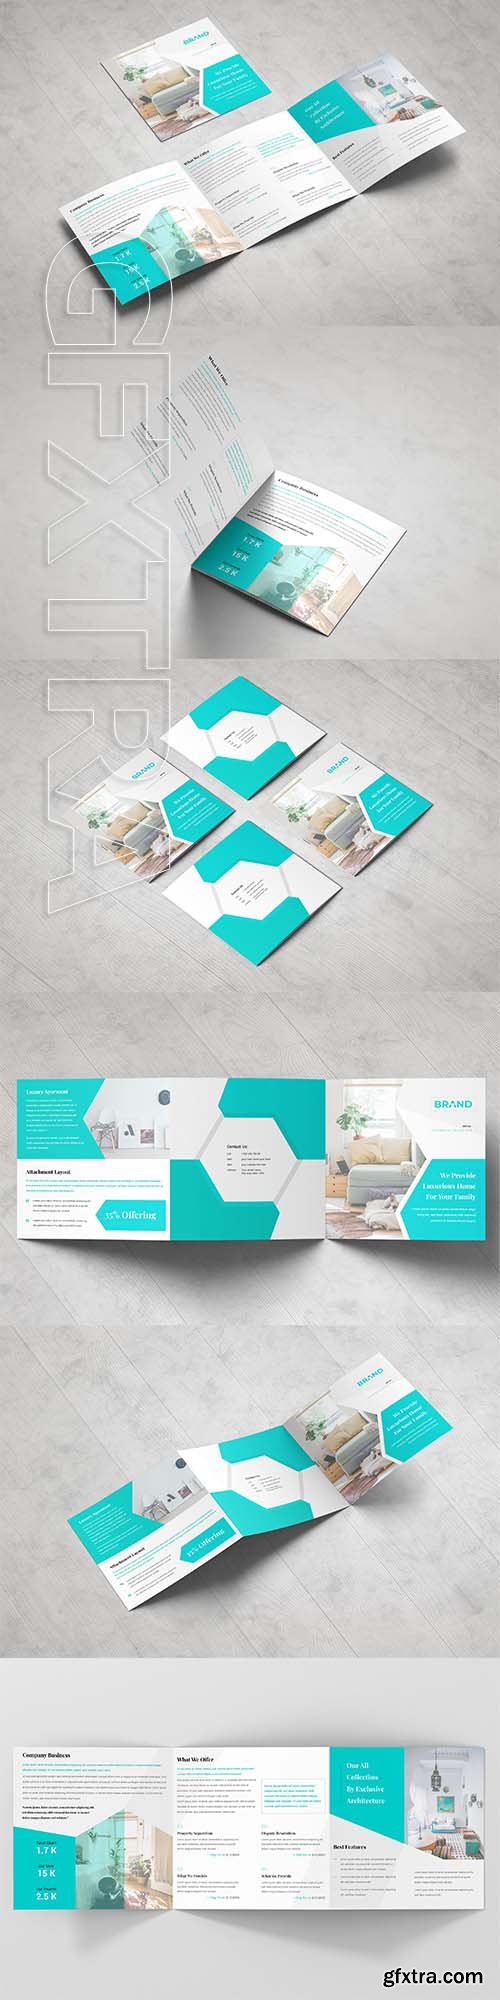 CreativeMarket - Business Square Tri fold Brochure 3378786